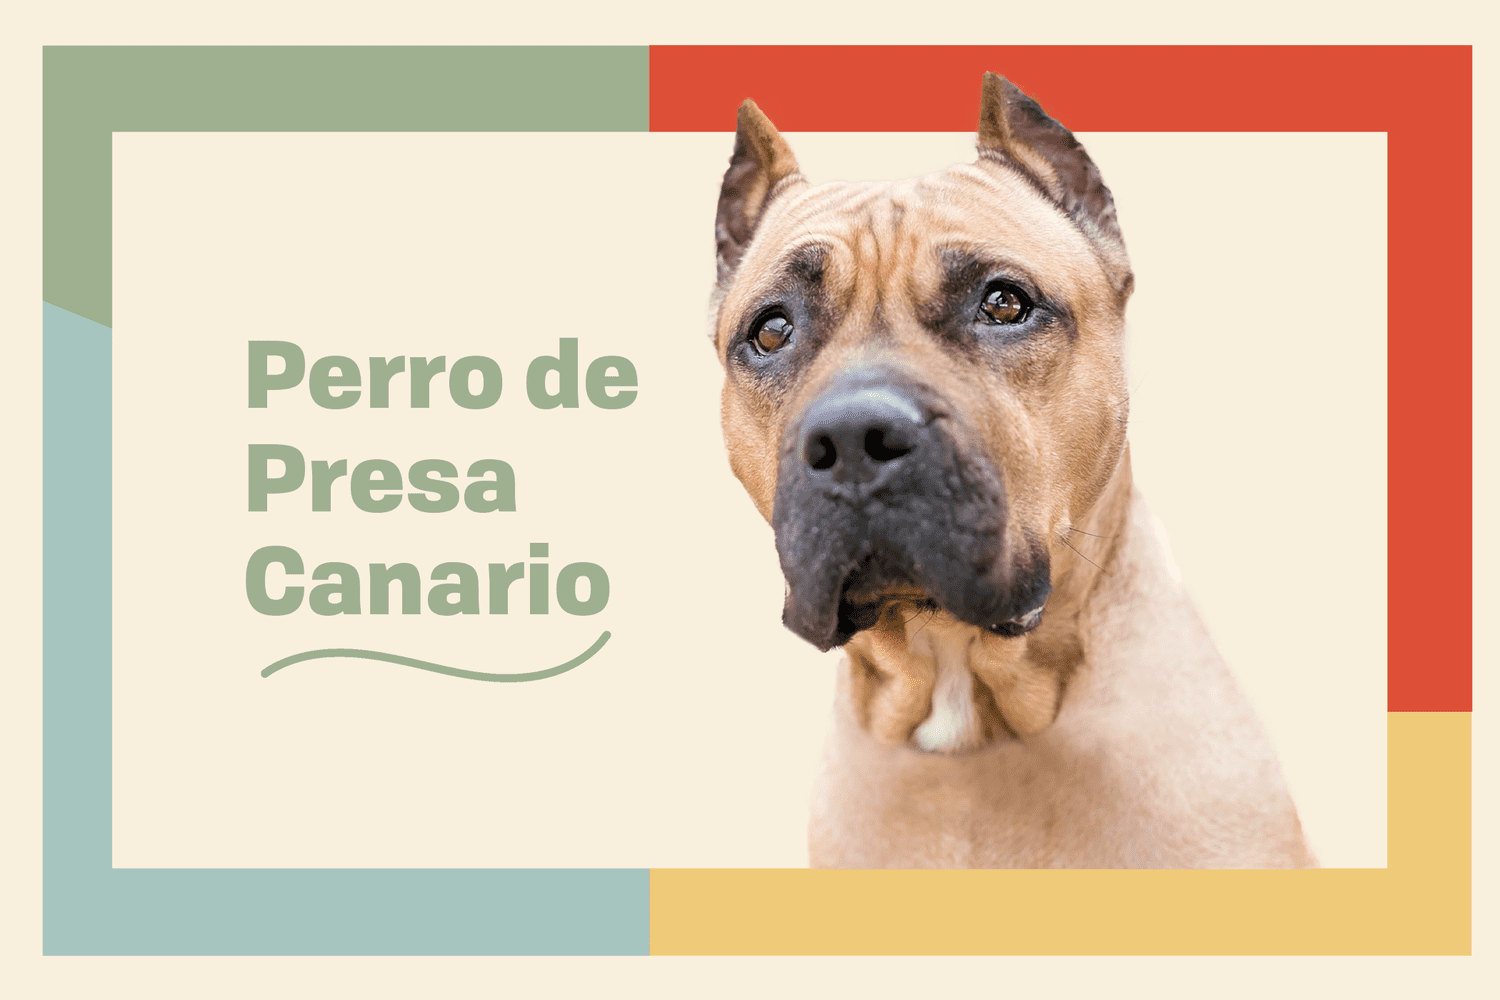 Perro de Prese Canario dog breed profile treatment